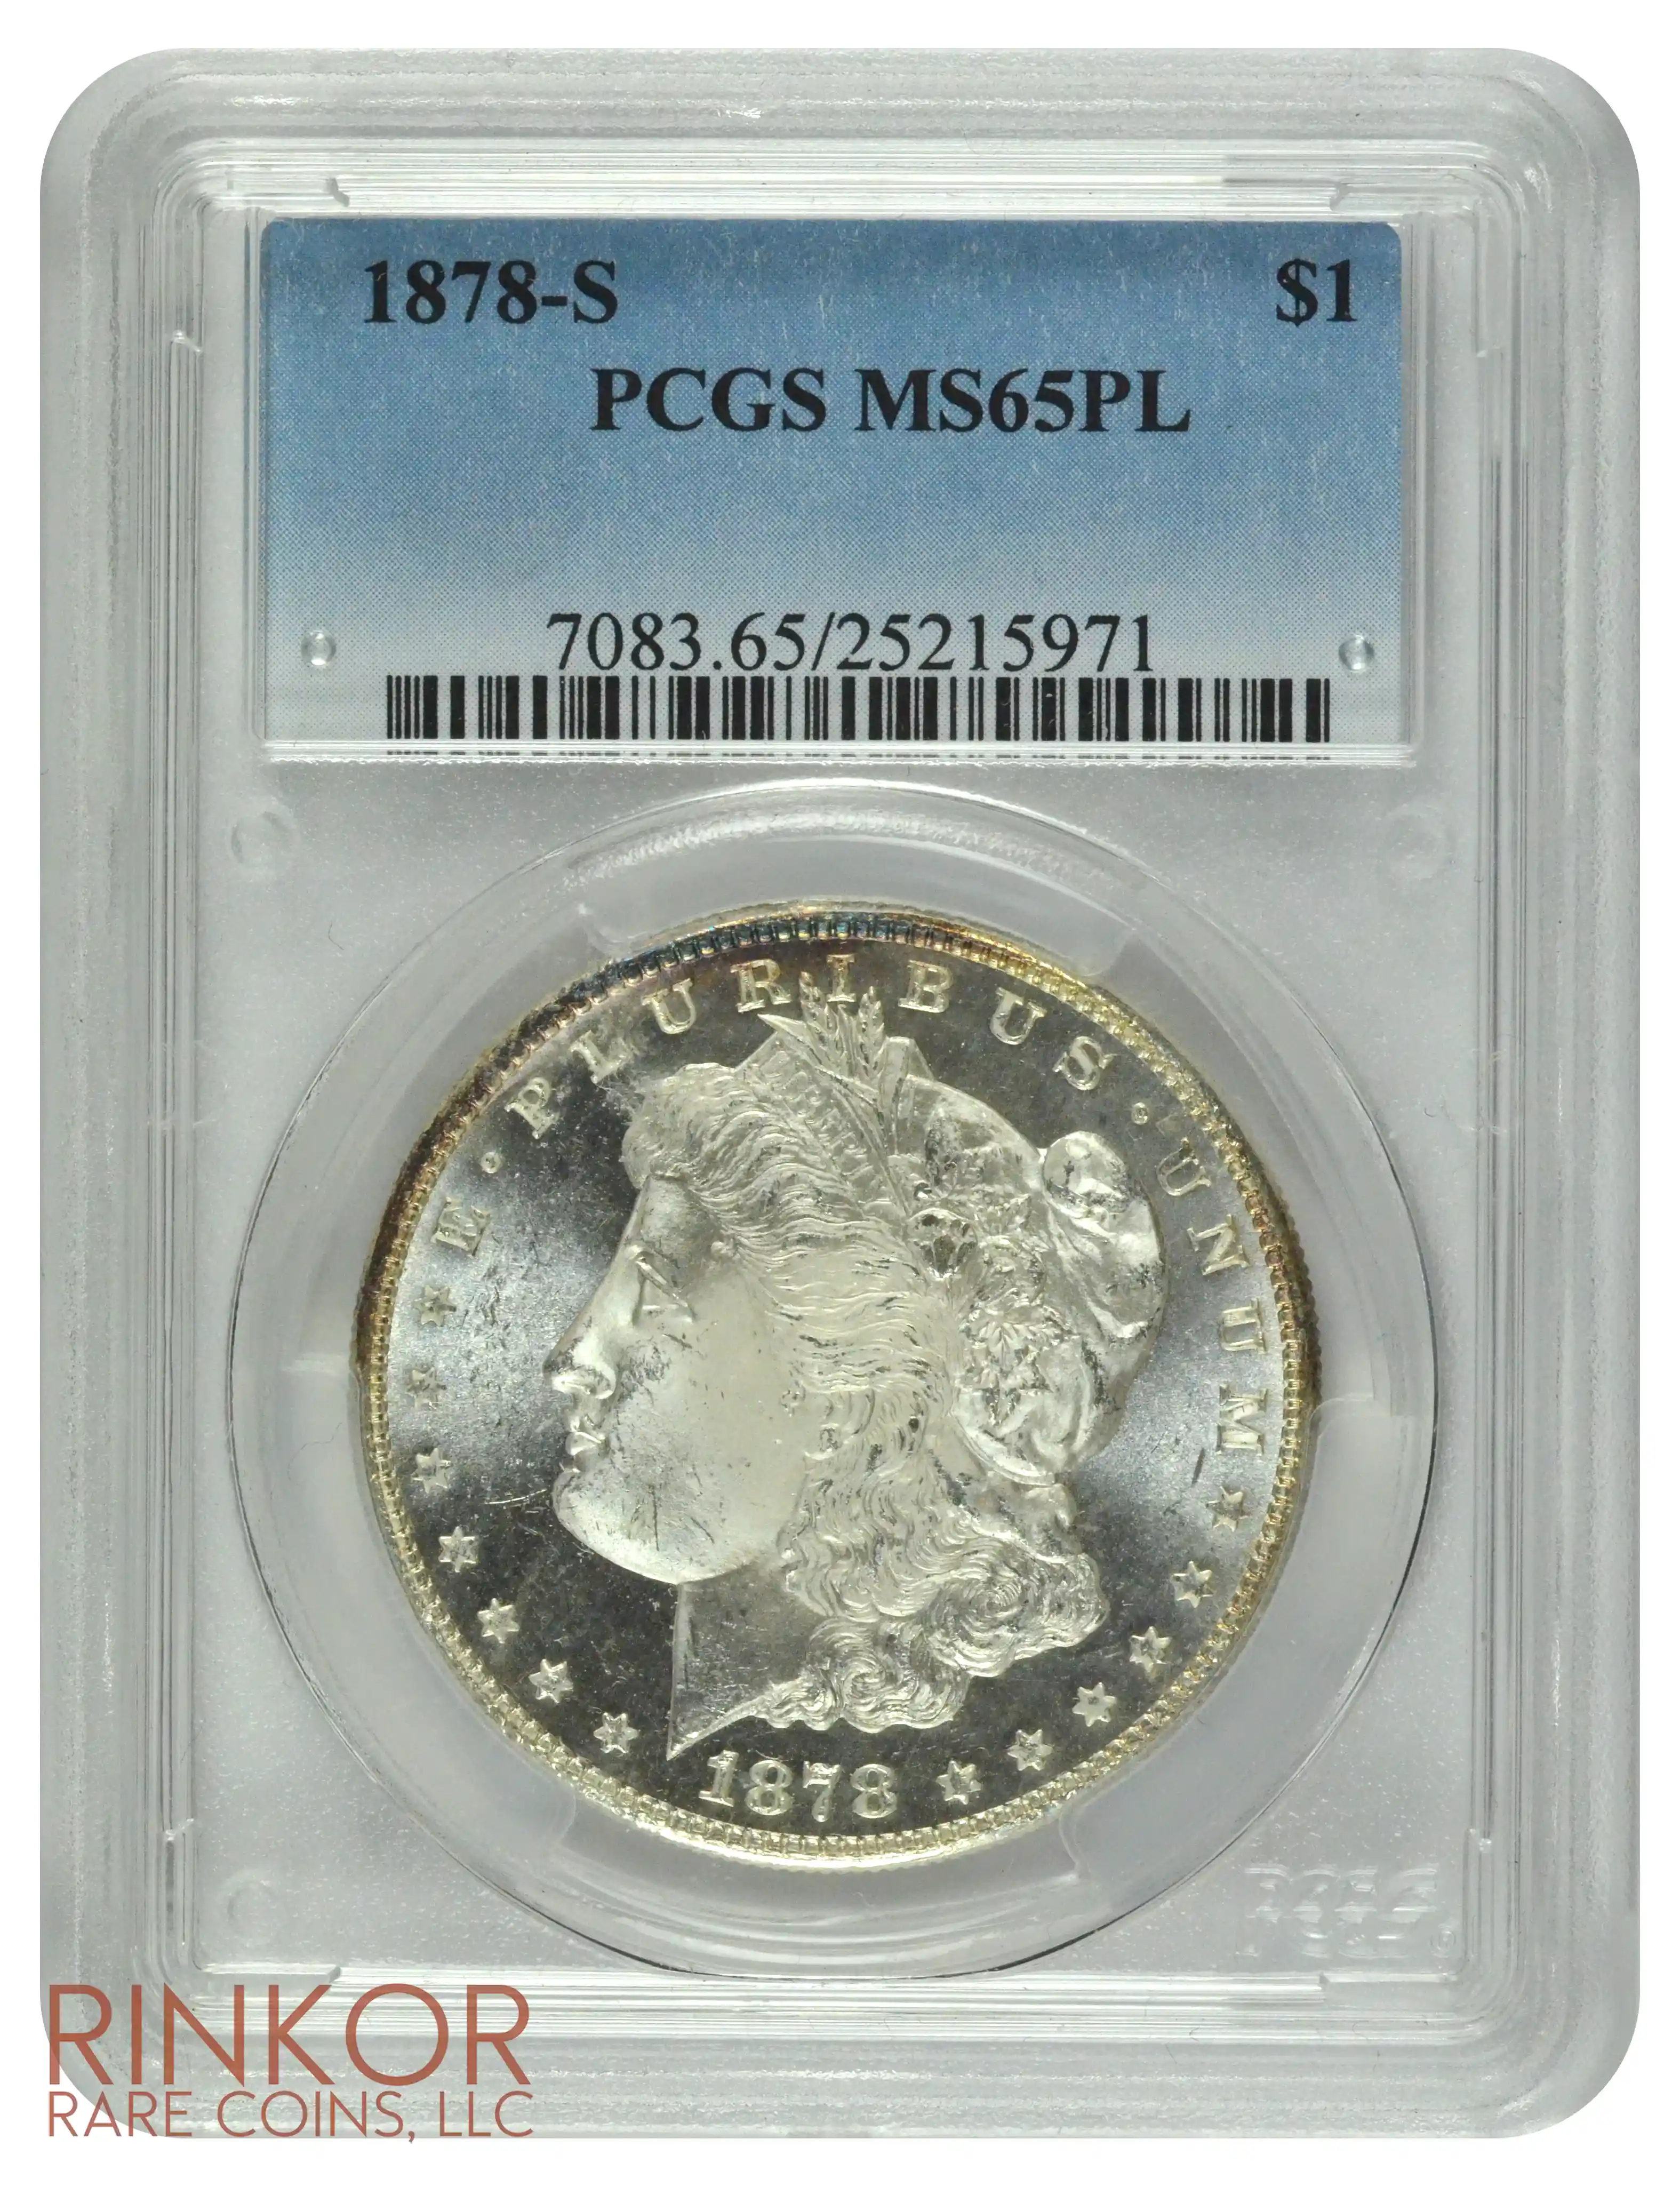 1878-S $1 PCGS MS 65 PL